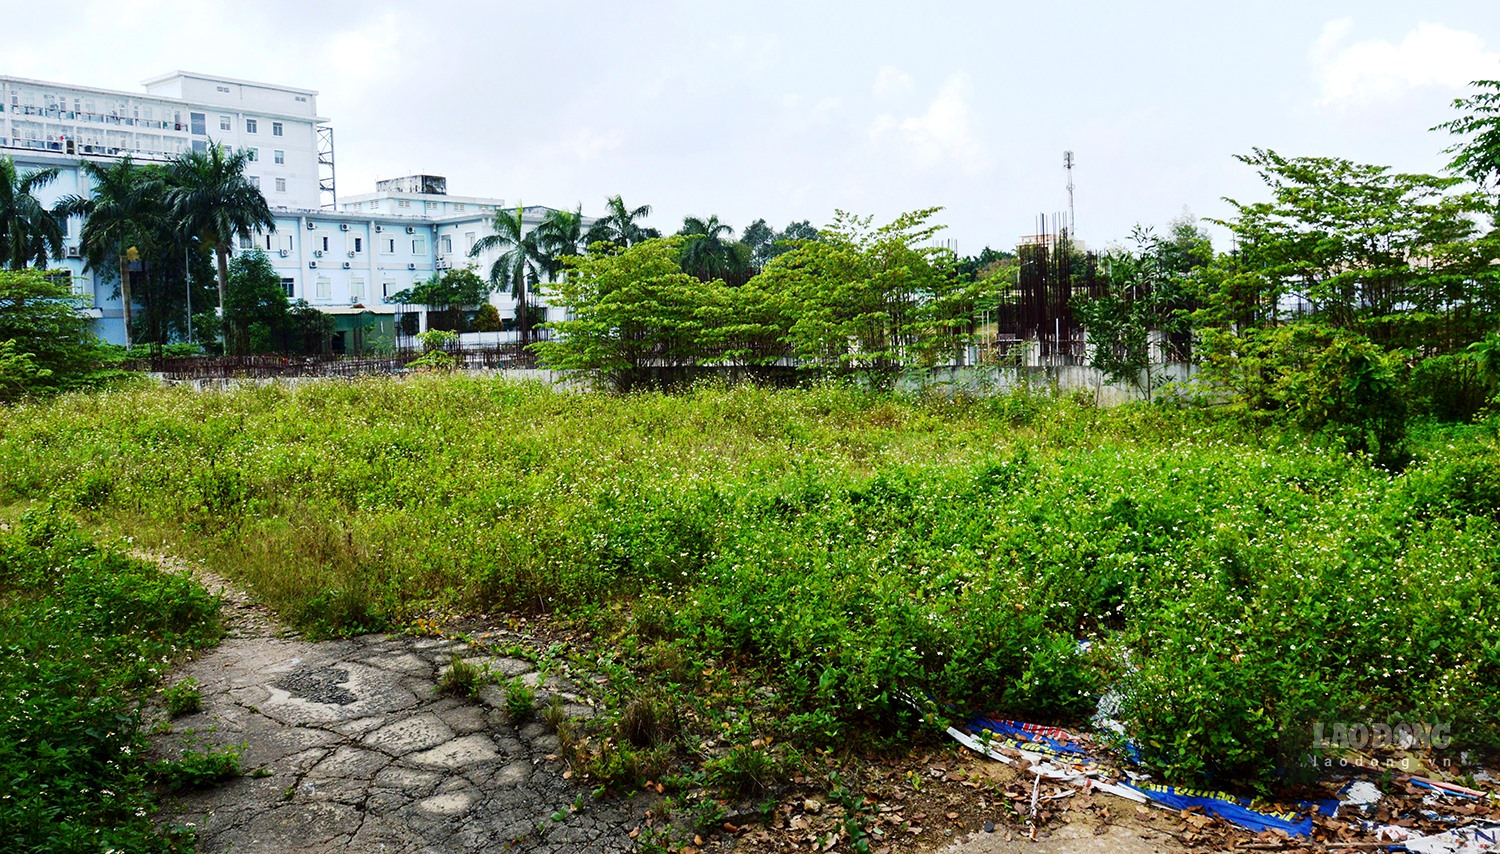 Dự án Khu dịch vụ chất lượng cao - BVĐK tỉnh Quảng ngãi bị bỏ giữa chừng, cây cỏ mọc um tùm, nhếch nhác giữa trung tâm TP Quảng Ngãi. Ảnh: Ngọc Viên